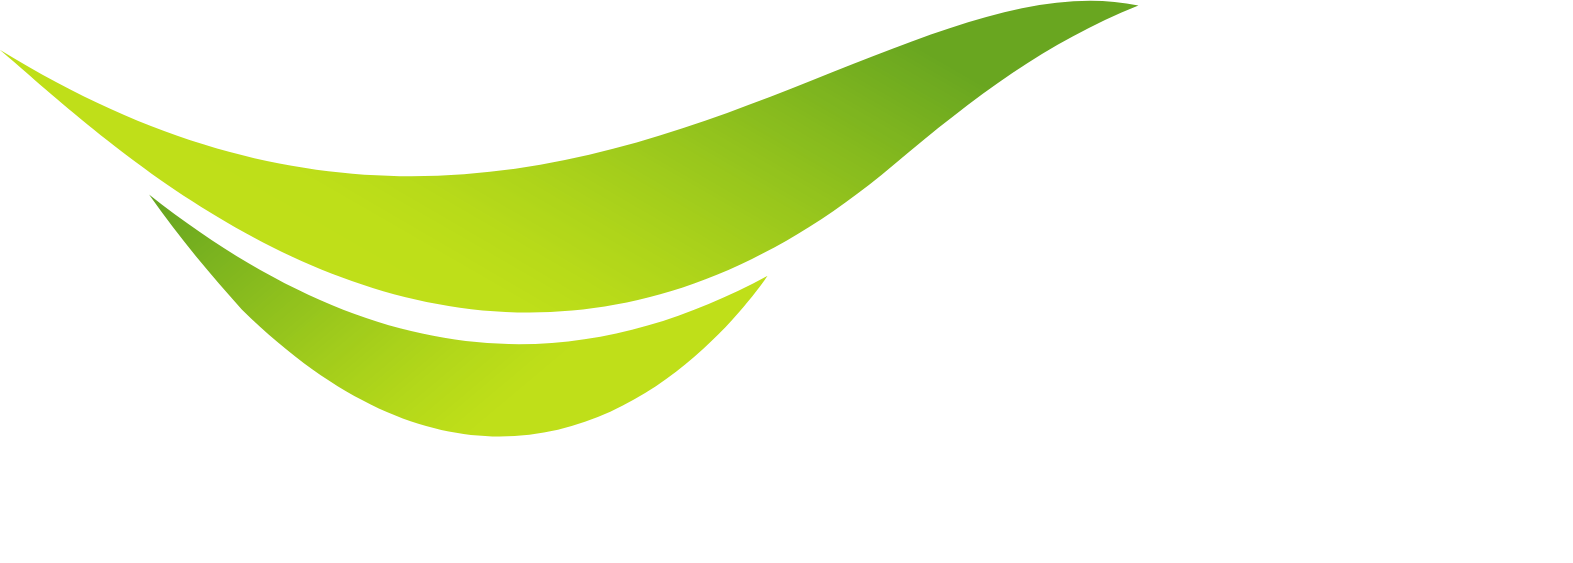 Advanced Info Service (AIS) logo grand pour les fonds sombres (PNG transparent)